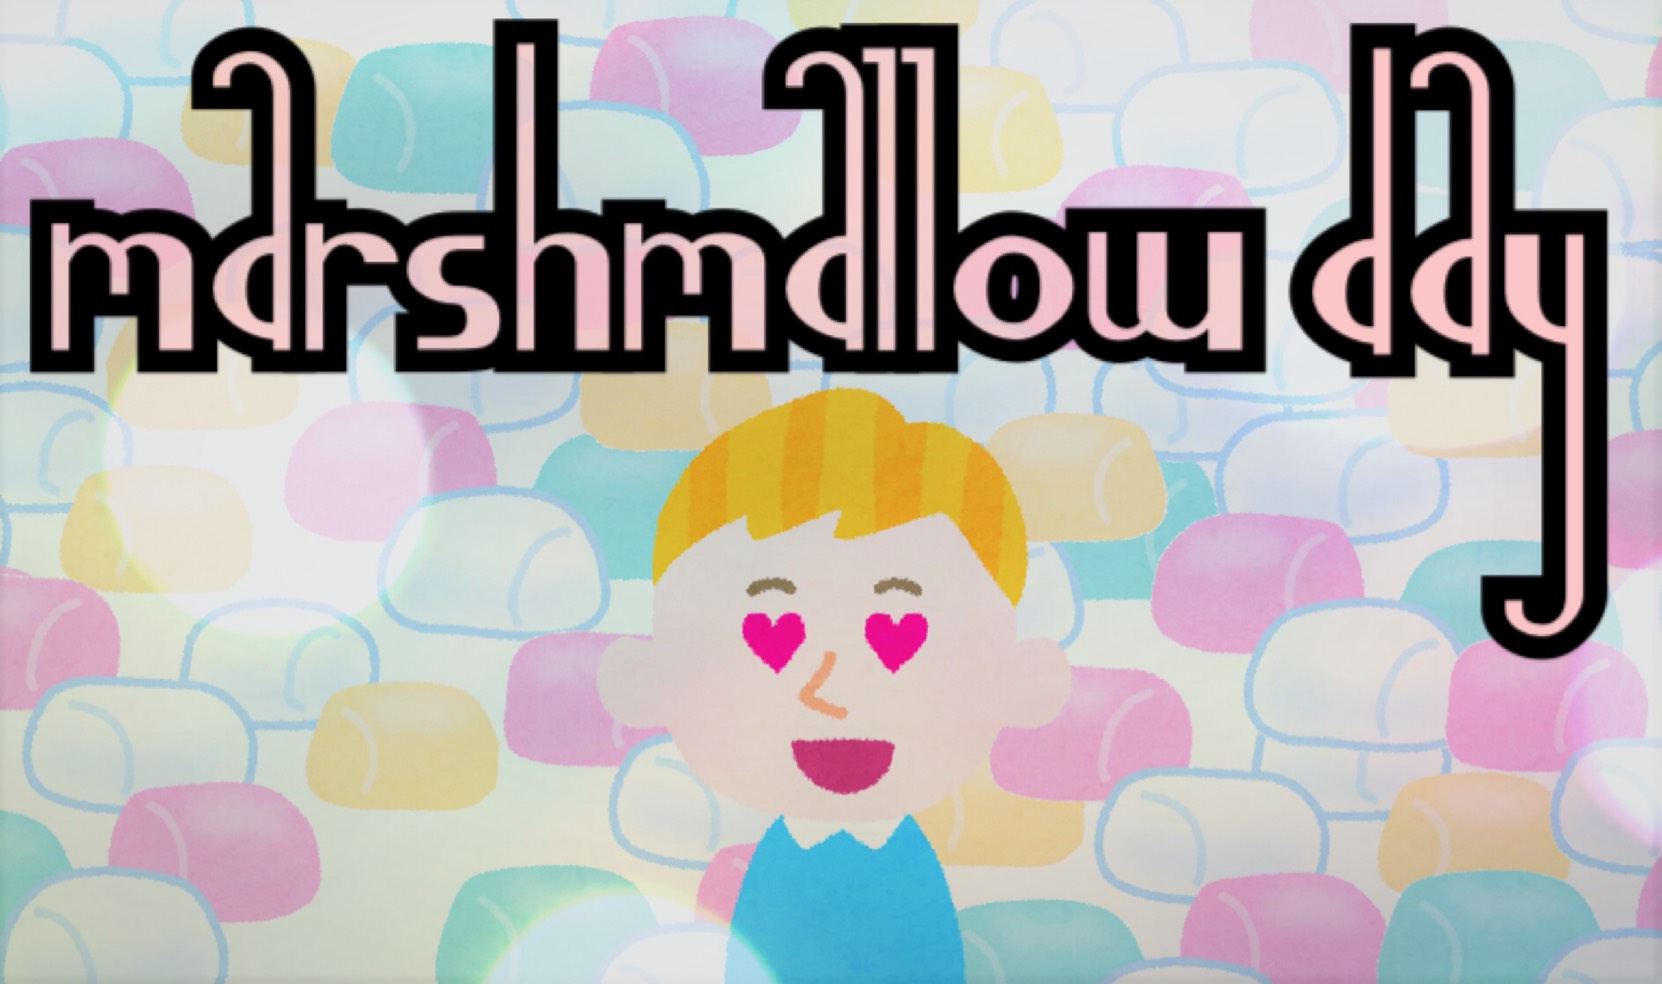 「Marshmallow day」のイメージ